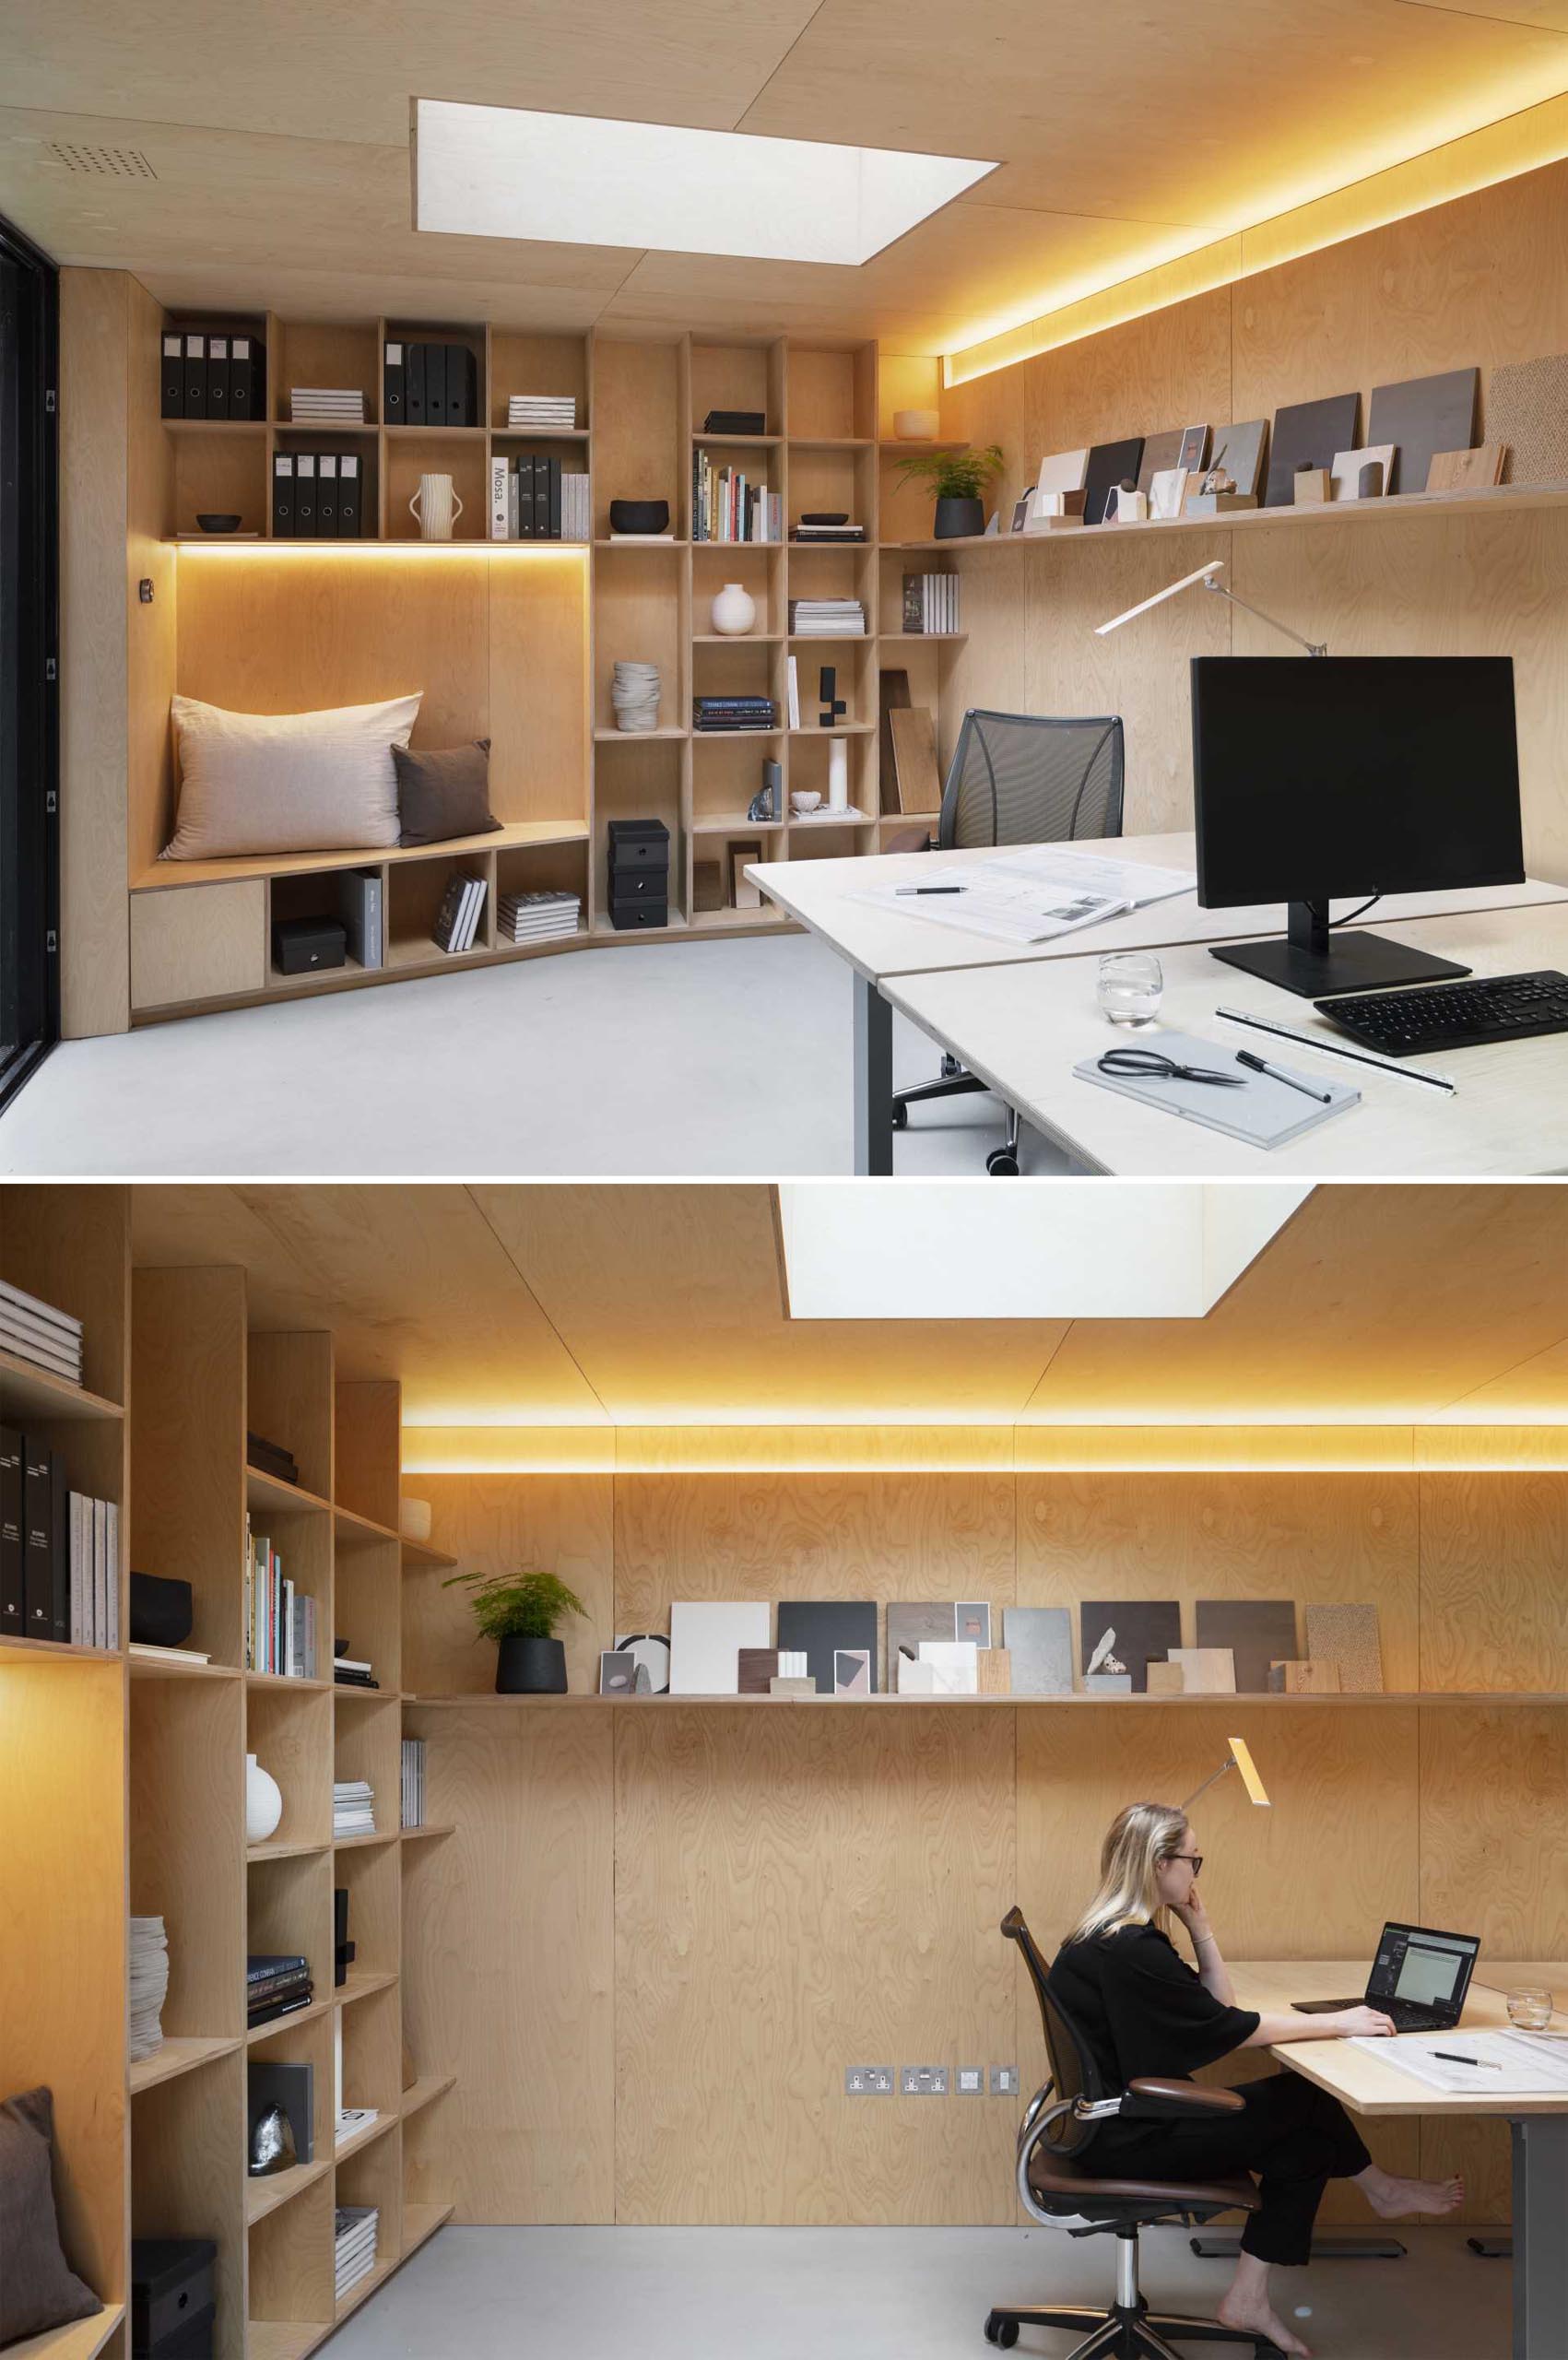 یک استودیو حیاط خلوت که به ،وان دفتر طراحی شده است شامل دیواری از قفسه های کتاب، گوشه ای برای نشستن و نورپردازی پنهان است.